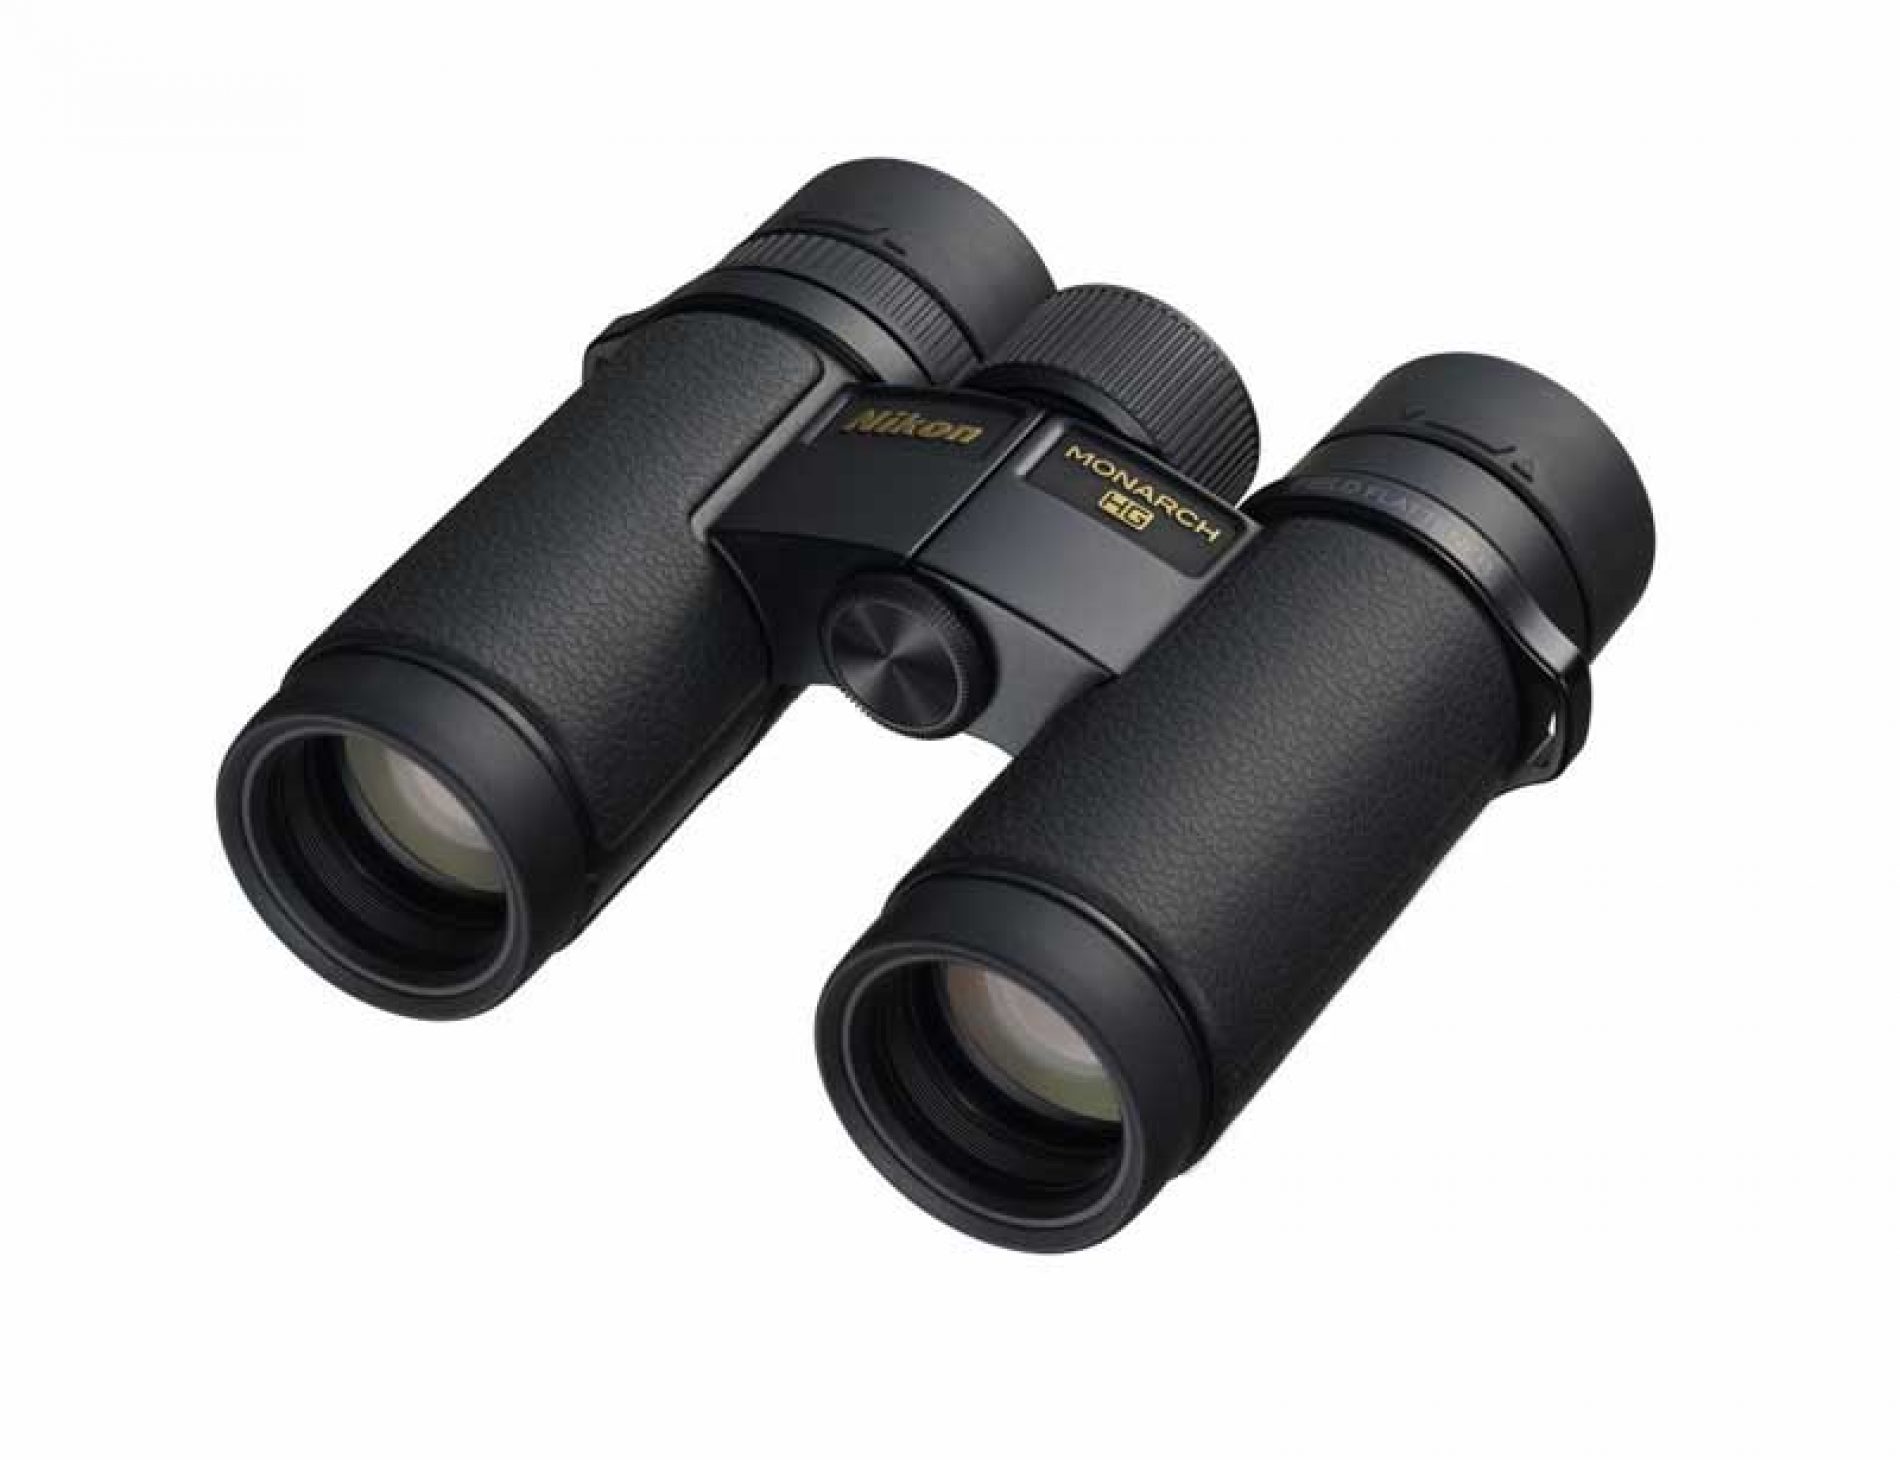 Nikon presenta sus binoculares MONARCH HG con diámetro de 30 mm